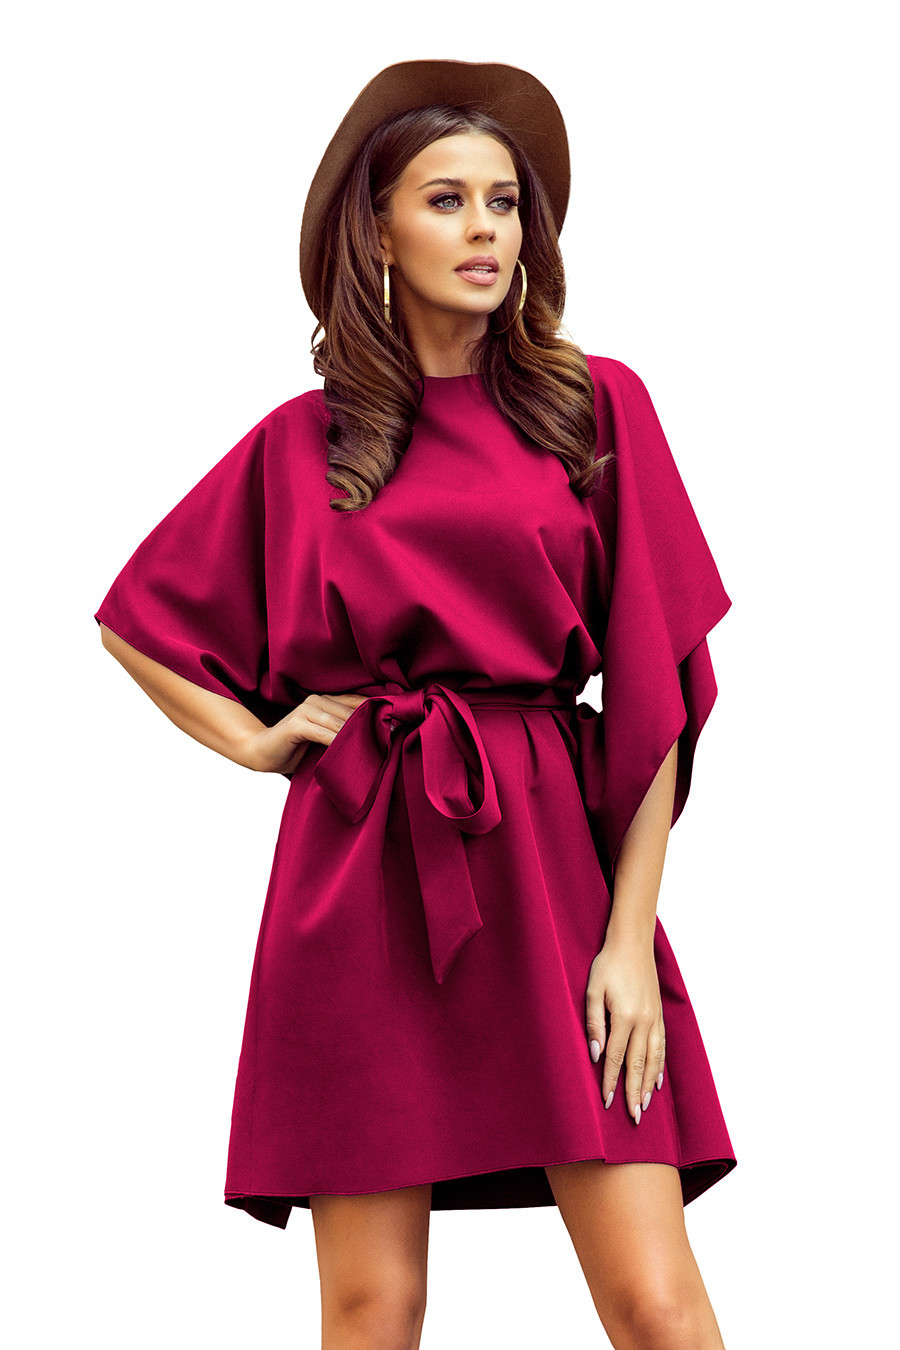 SOFIA - Dámské motýlkové šaty ve vínové bordó barvě se zavazováním v pase 287-18 L/XL